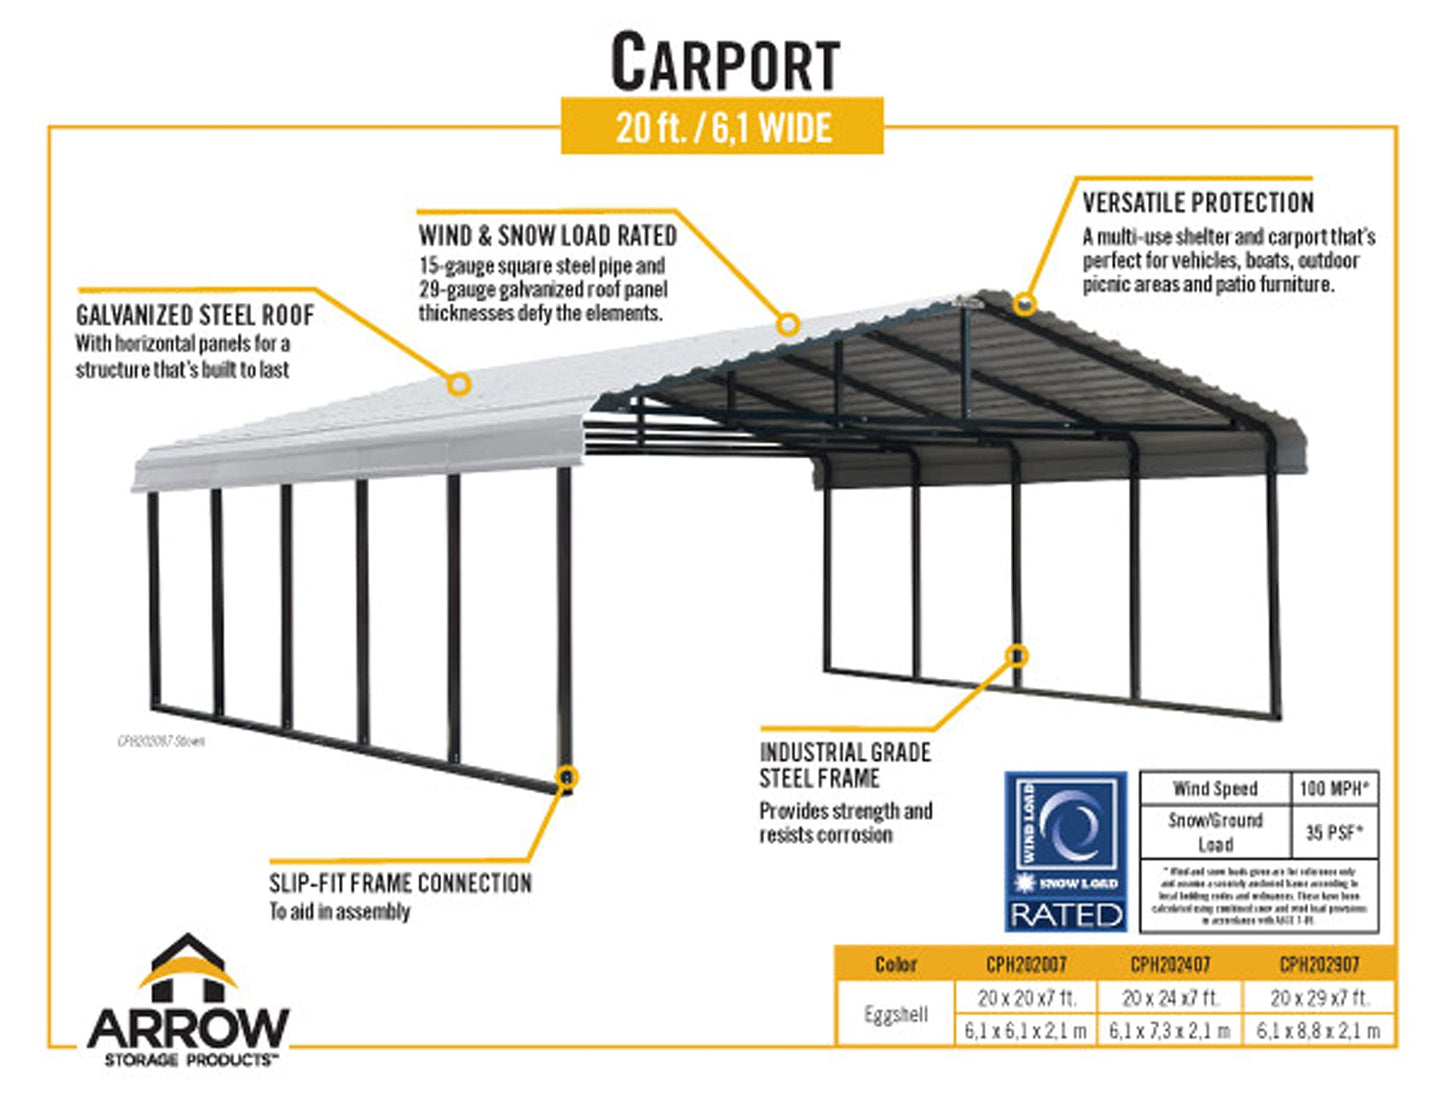 Arrow Carport, 20 ft. x 24 ft. x 7 ft. Eggshell 20' x 24' x 7'